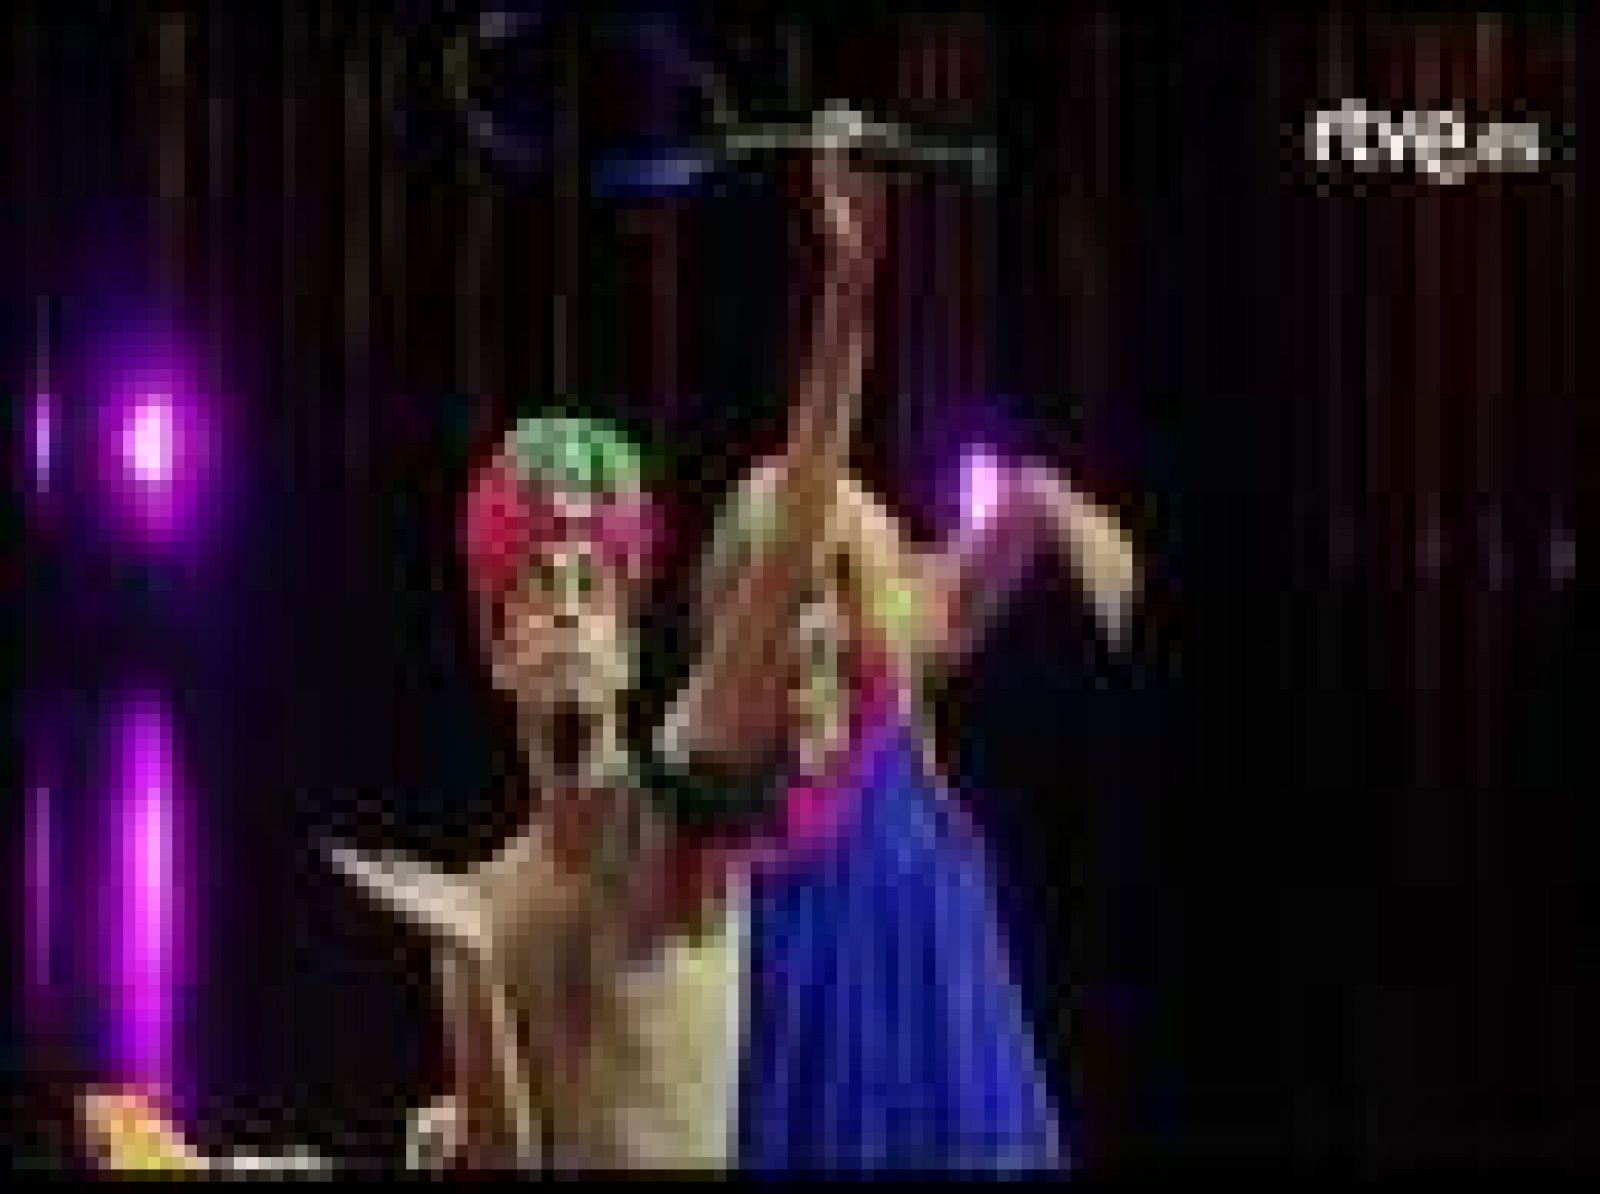  El Circo del Sol estrena el jueves en Madrid un nuevo espectáculo: Varekai, que en lengua romaní significa "en cualquier lugar". Es un homenaje al espíritu nómada del circo. 